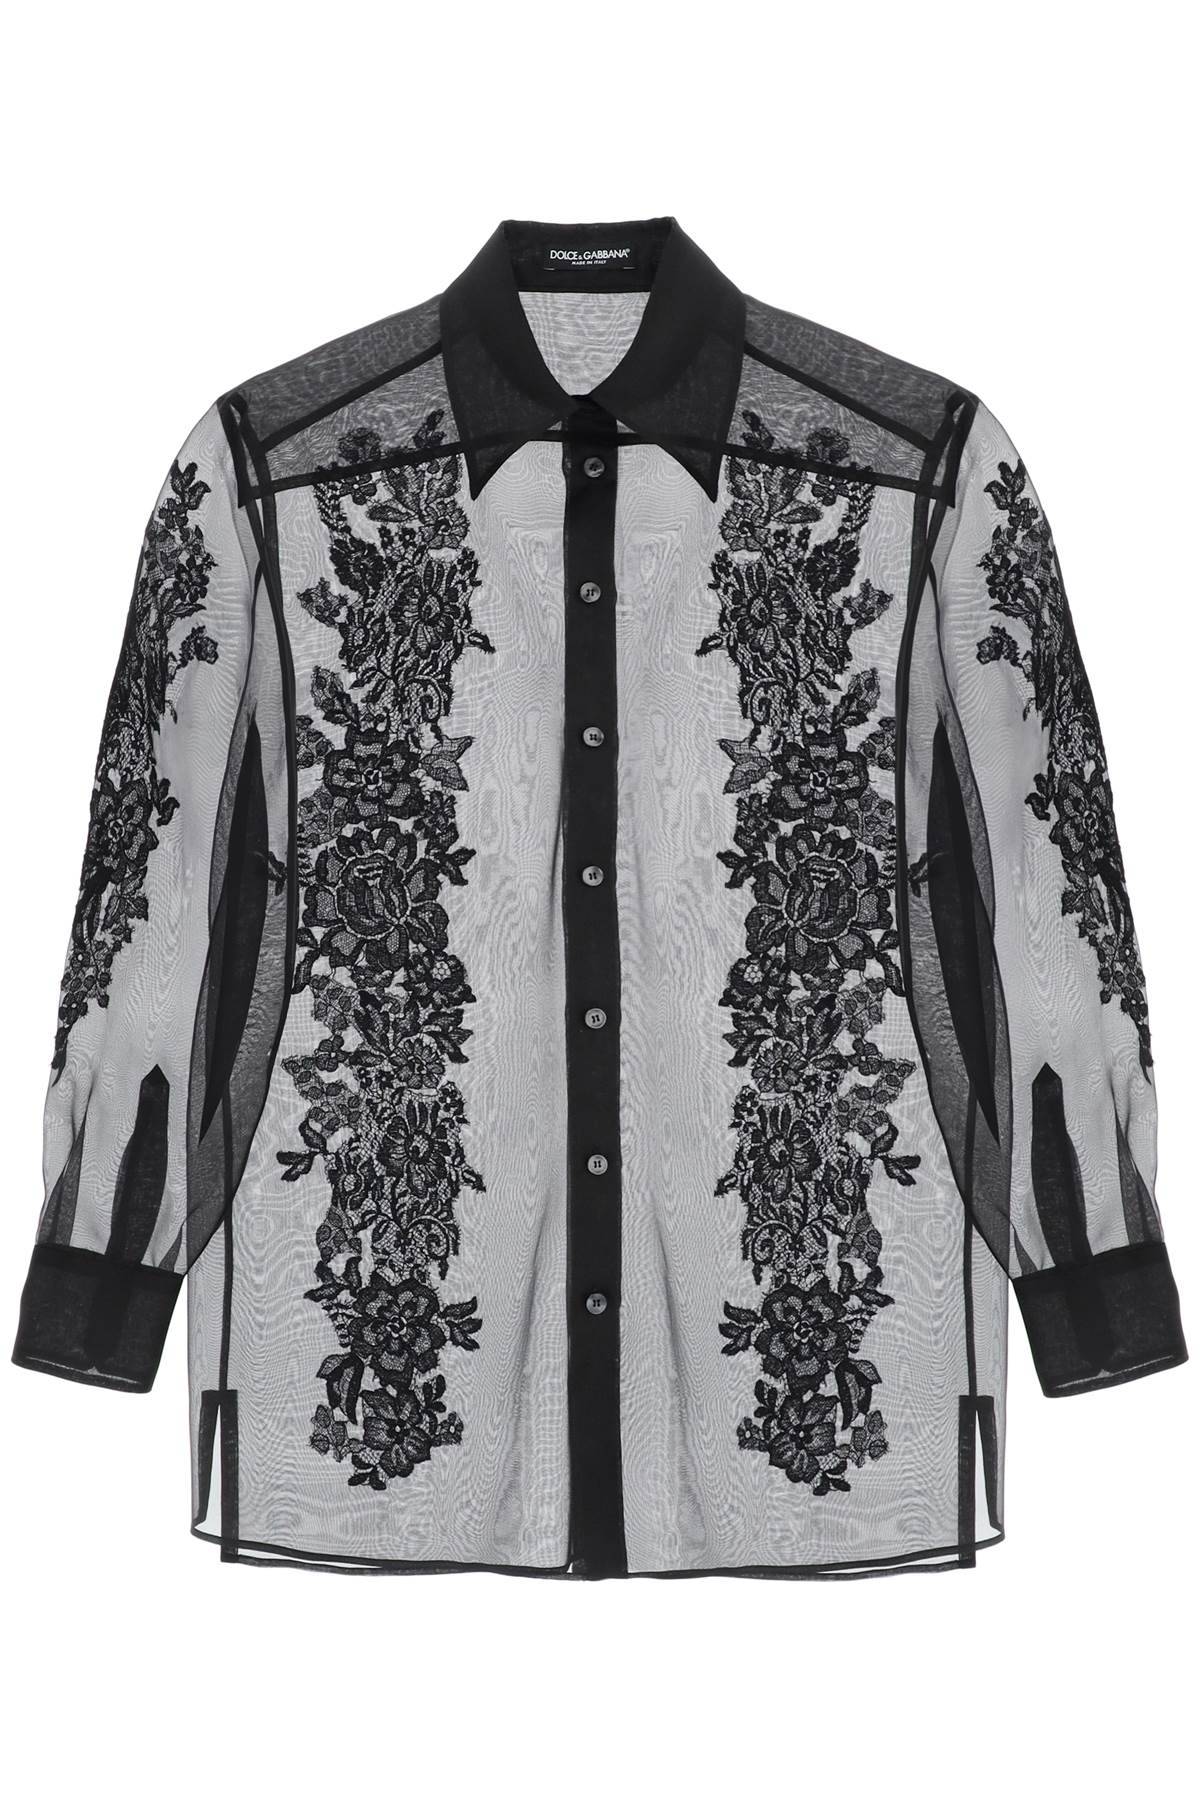 Dolce & Gabbana DOLCE & GABBANA organza shirt with lace inserts